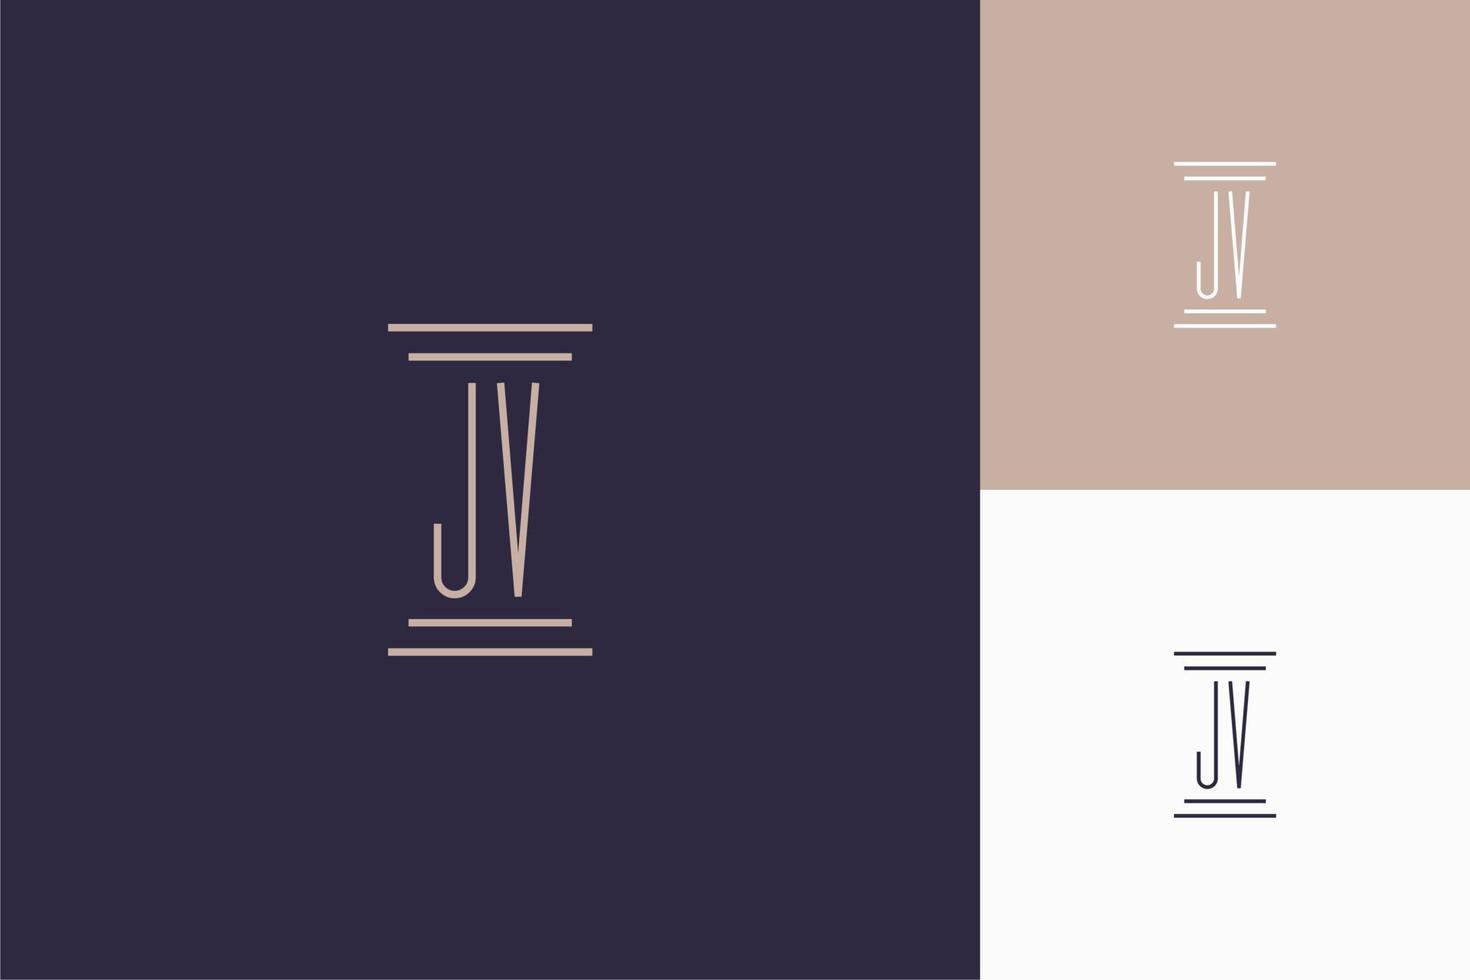 jv monogram initialer design för advokatbyråns logotyp vektor